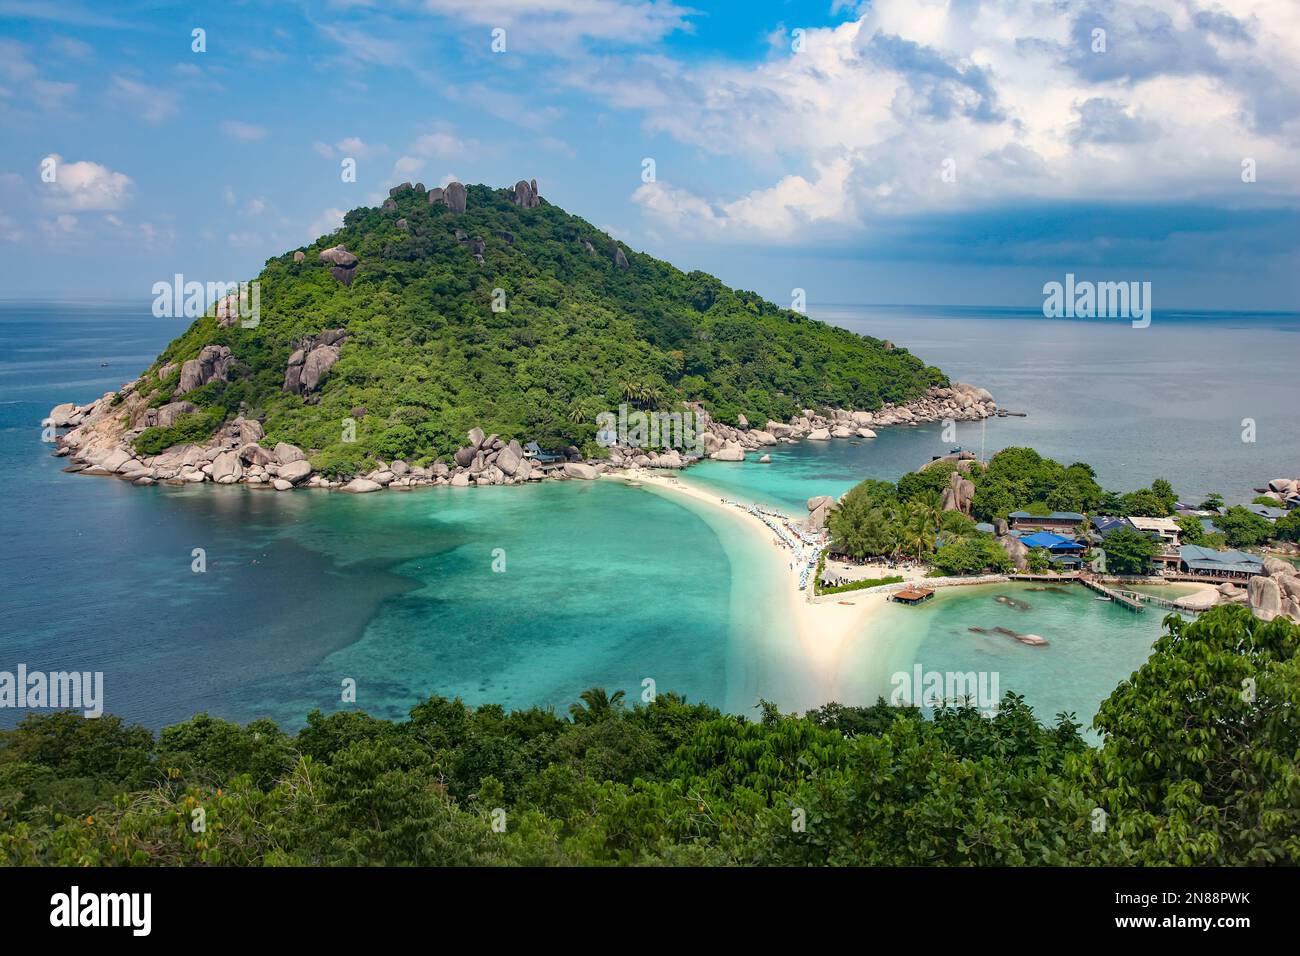 Bellissimo punto di vista di Koh Nang Yuan, con vista sull'isola collegata da una spiaggia e l'oceano turchese, Koh Tao, Thailandia. Foto Stock